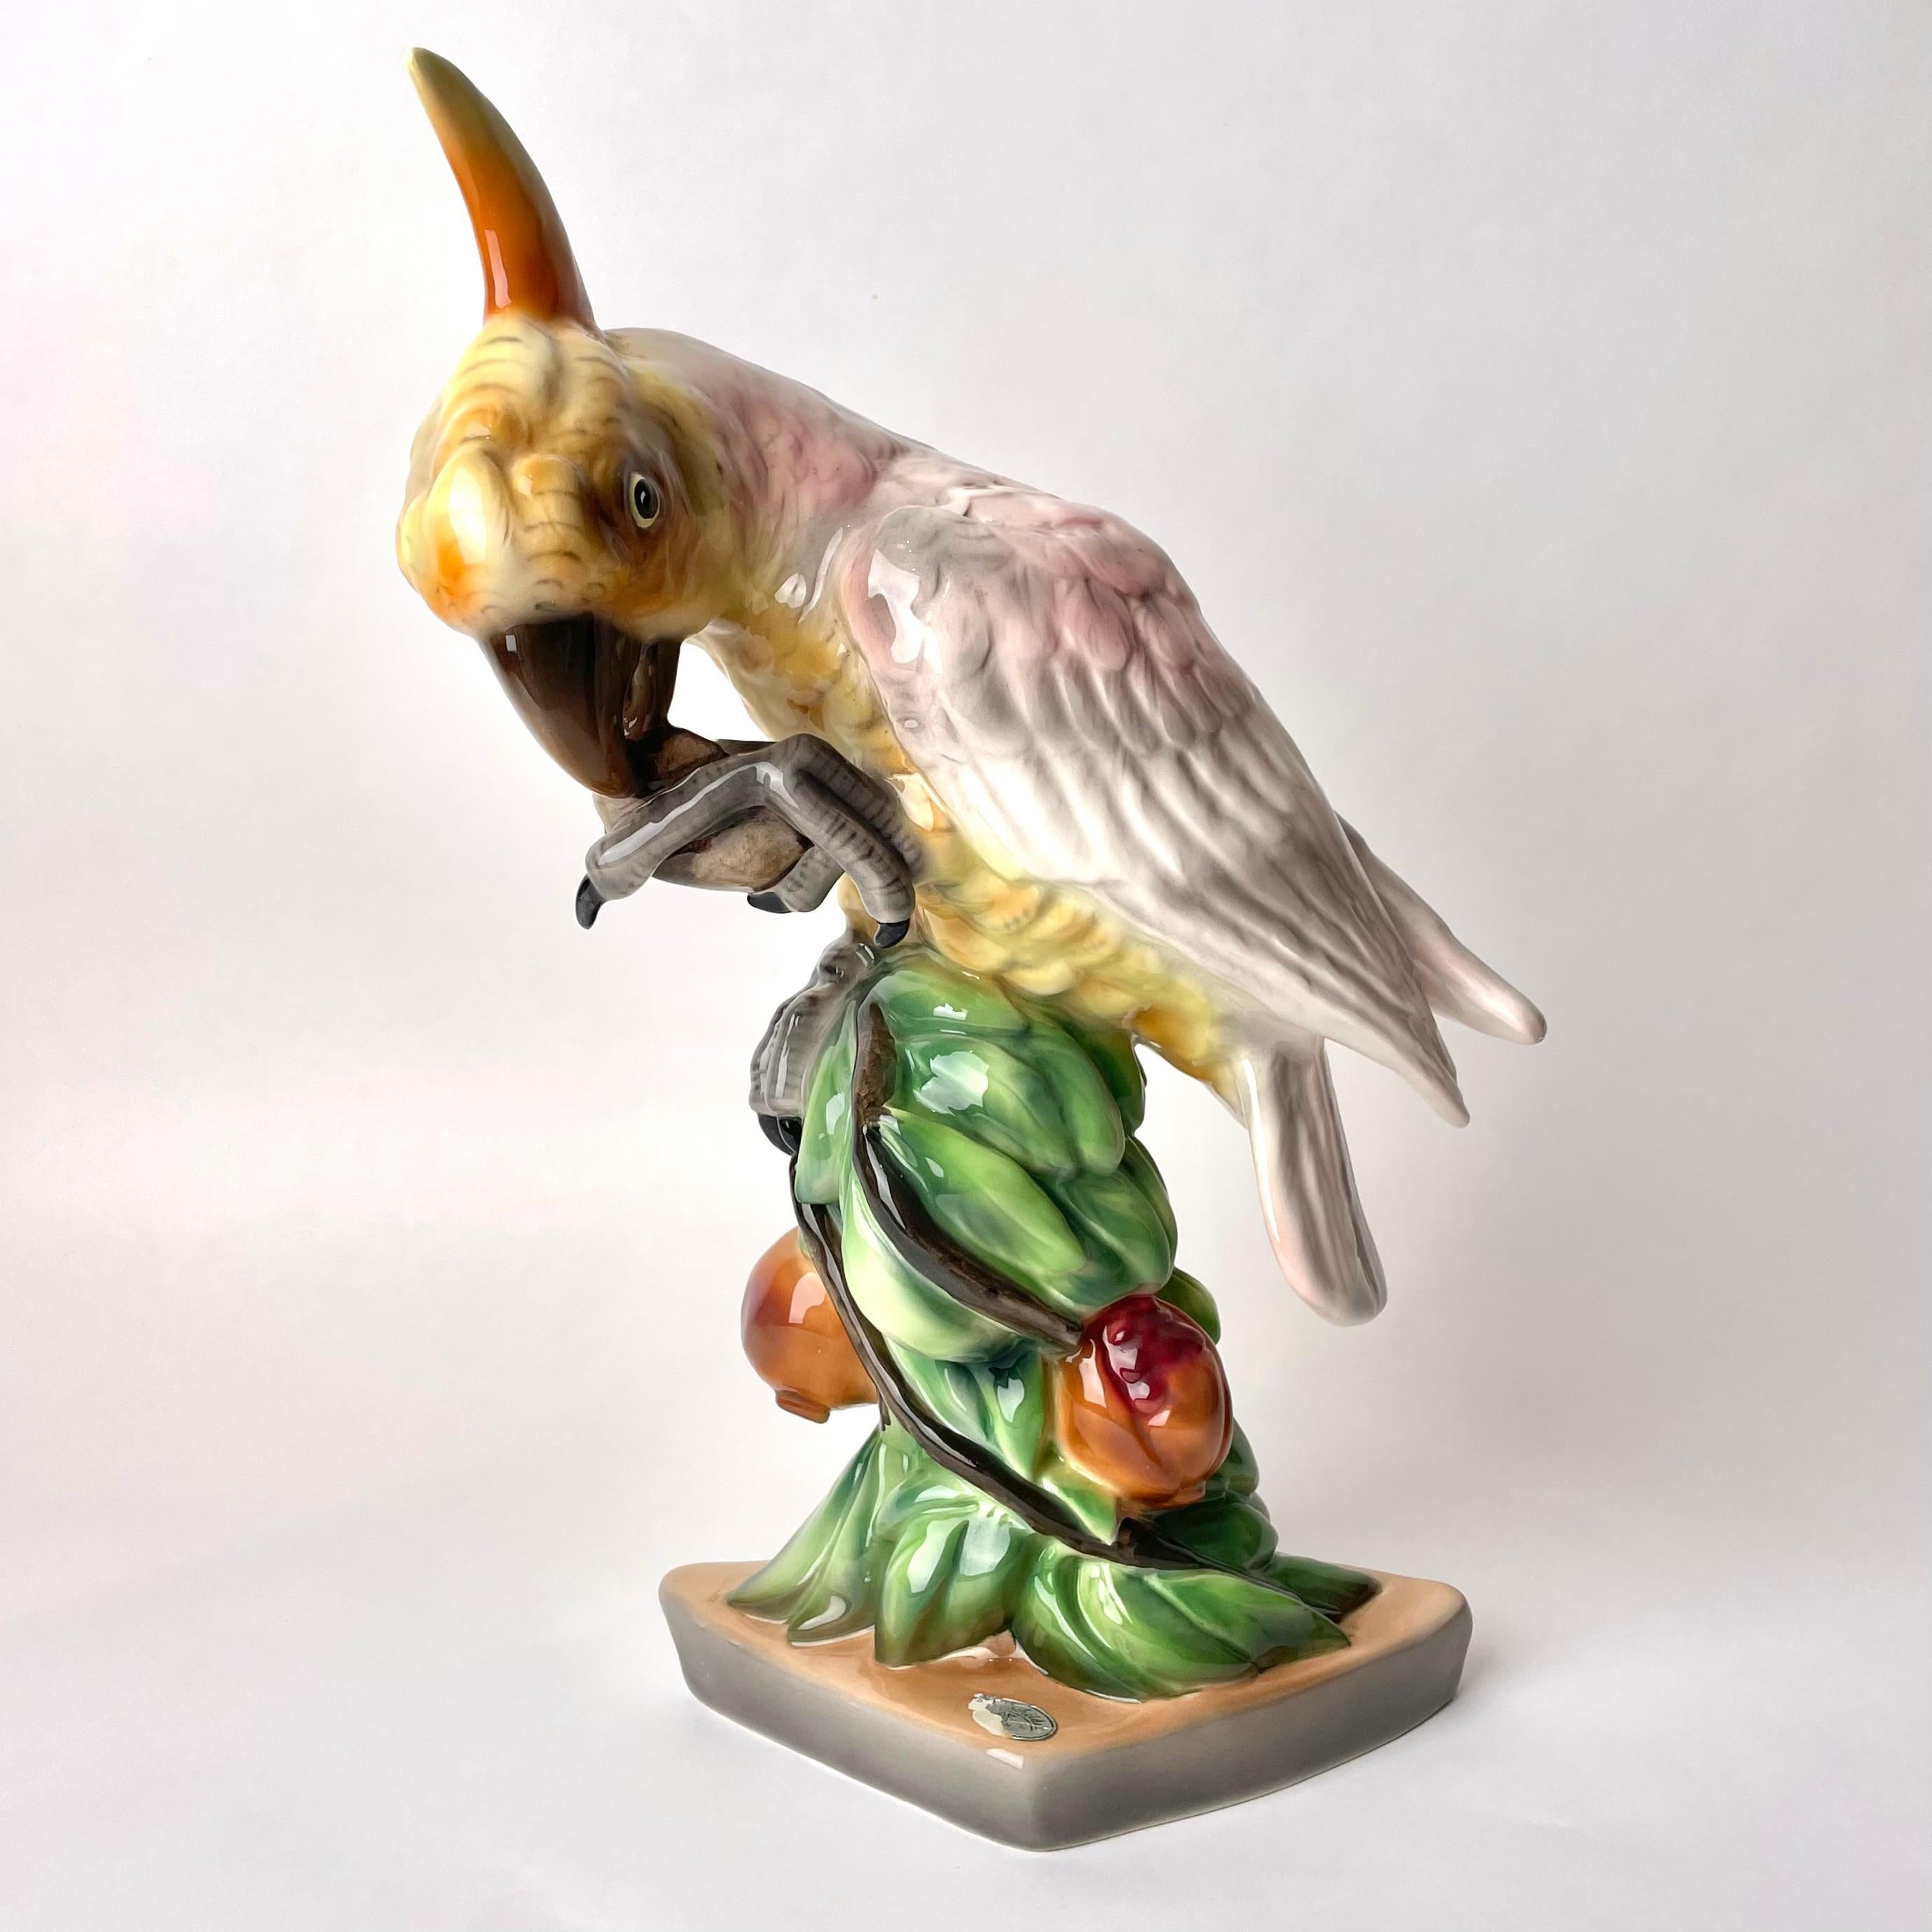 Figurine en céramique viennoise en forme de perroquet assis sur une Branch avec une pomme, probablement années 1920

Cette charmante figurine en porcelaine a été fabriquée par la célèbre entreprise viennoise de céramique Goldscheider. L'entreprise a